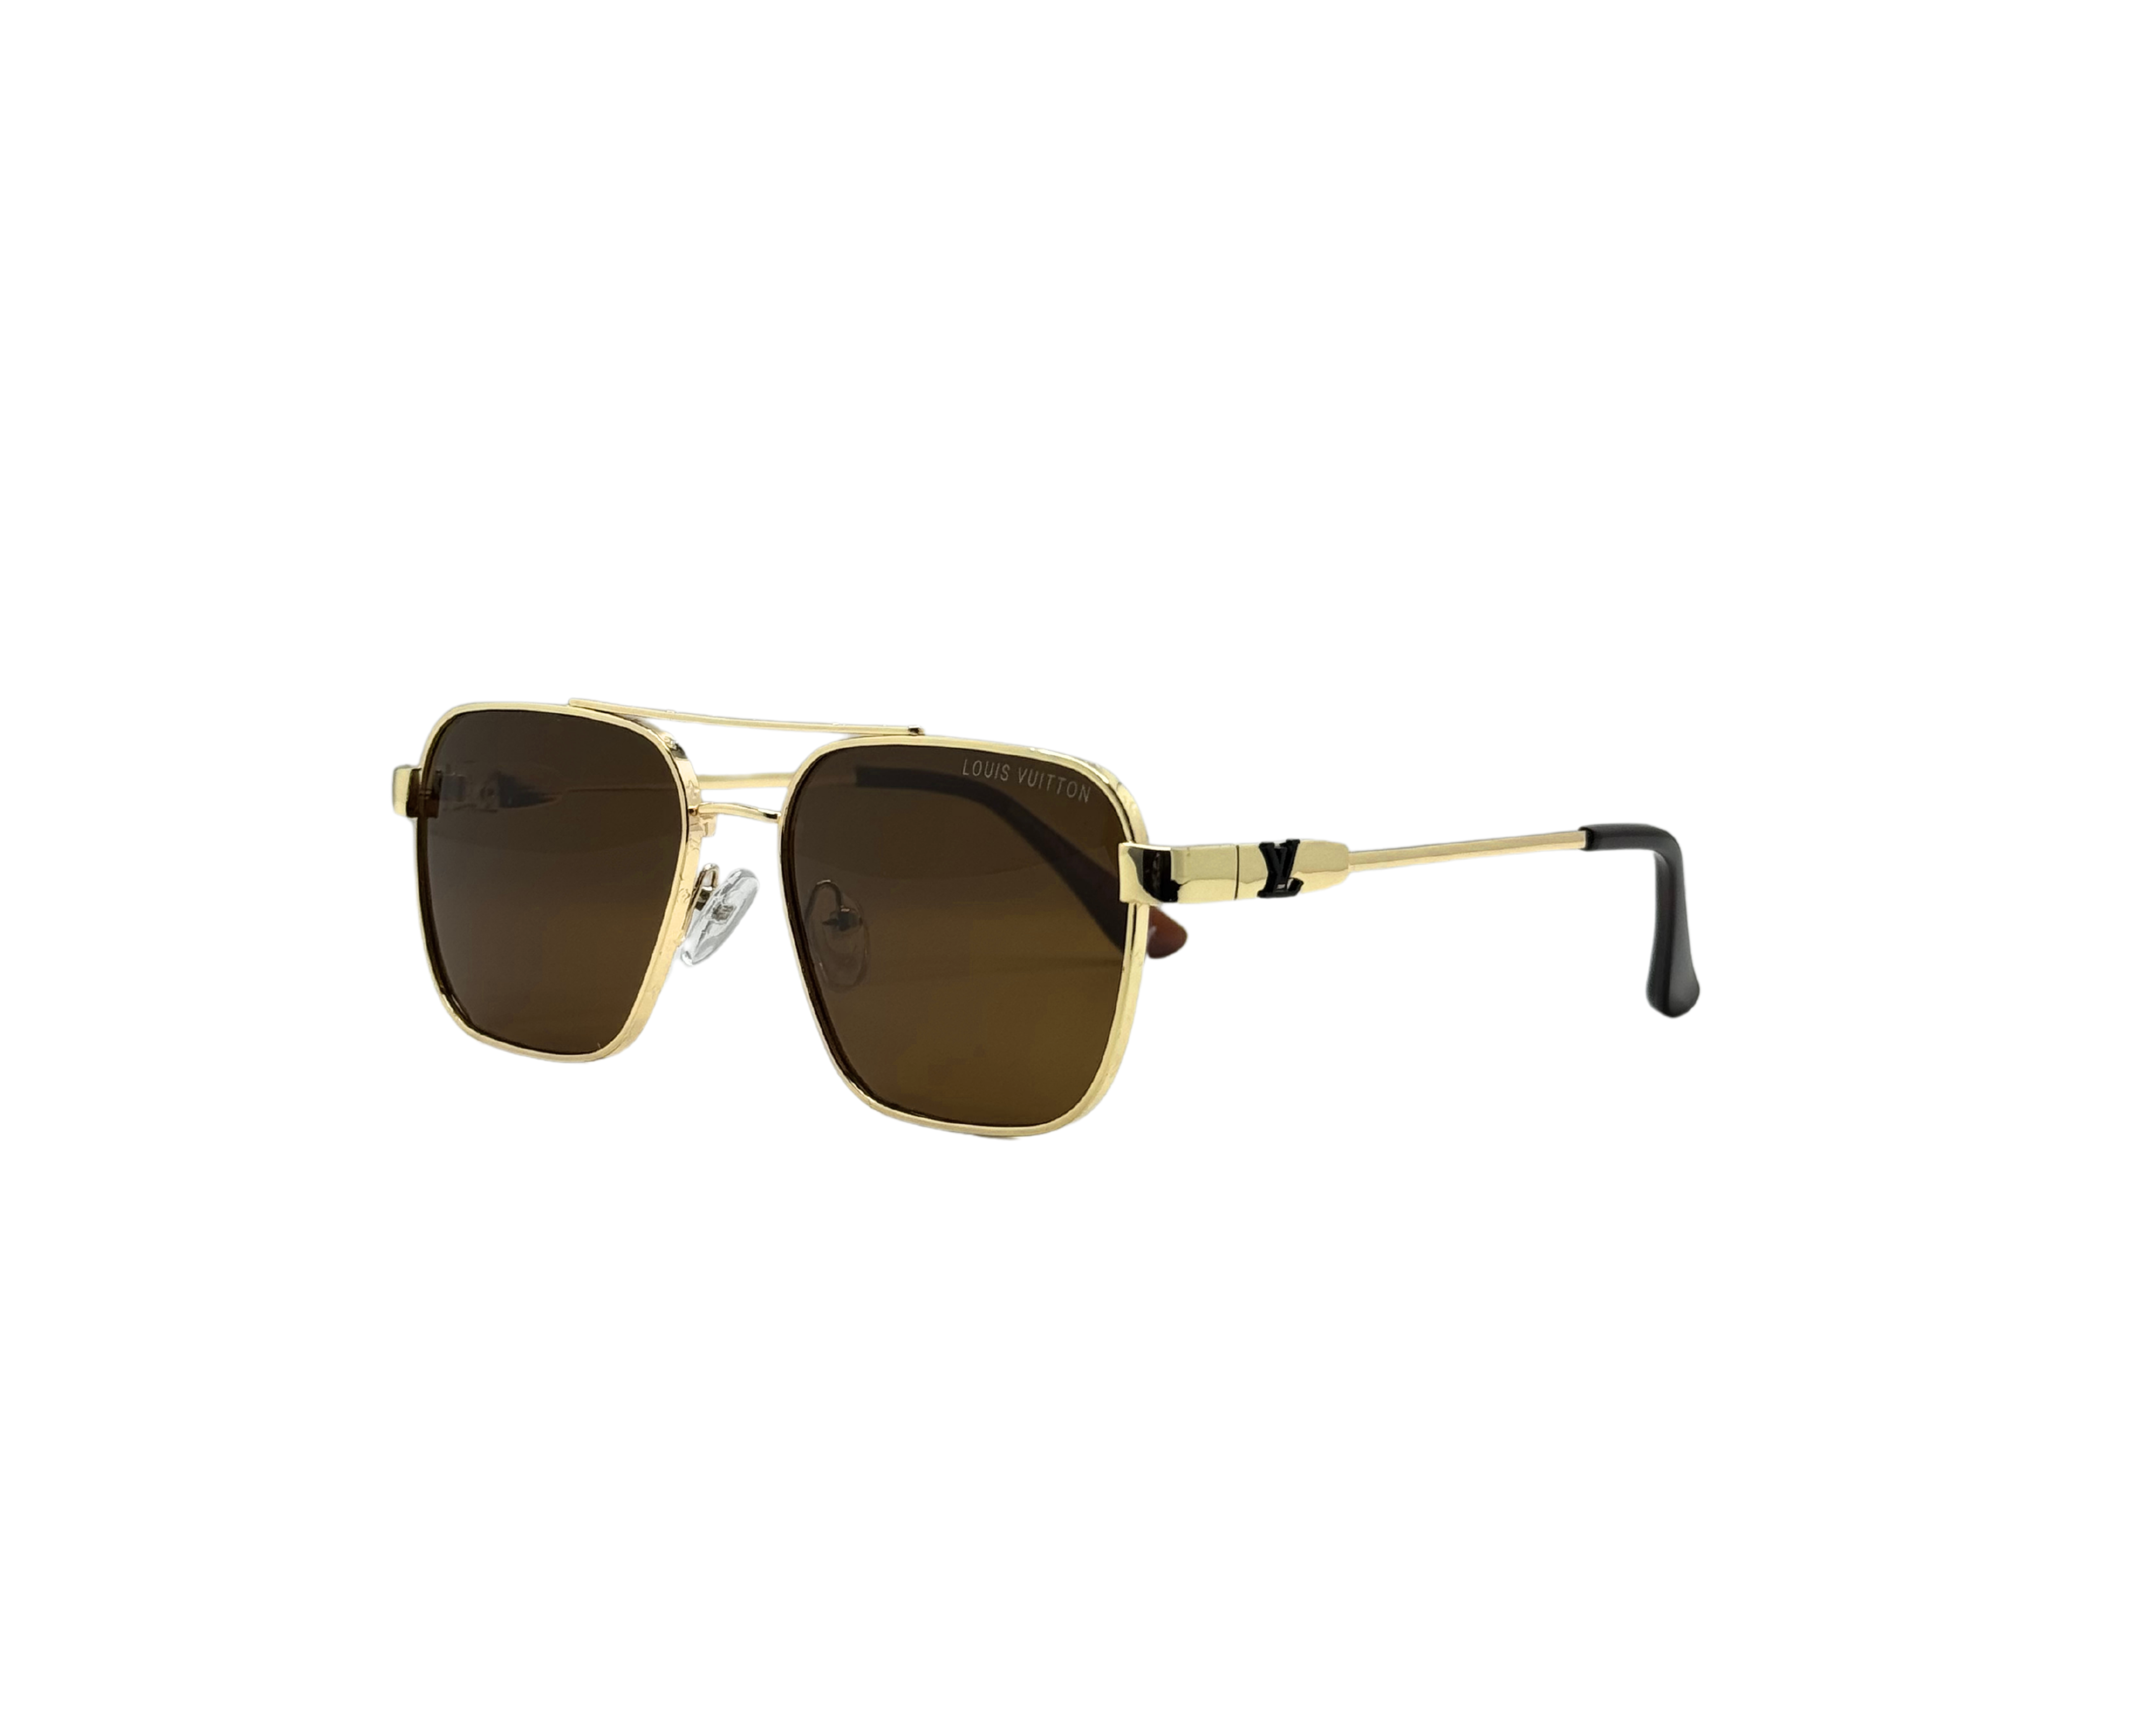 NS Deluxe - 330 - Golden - Sunglasses